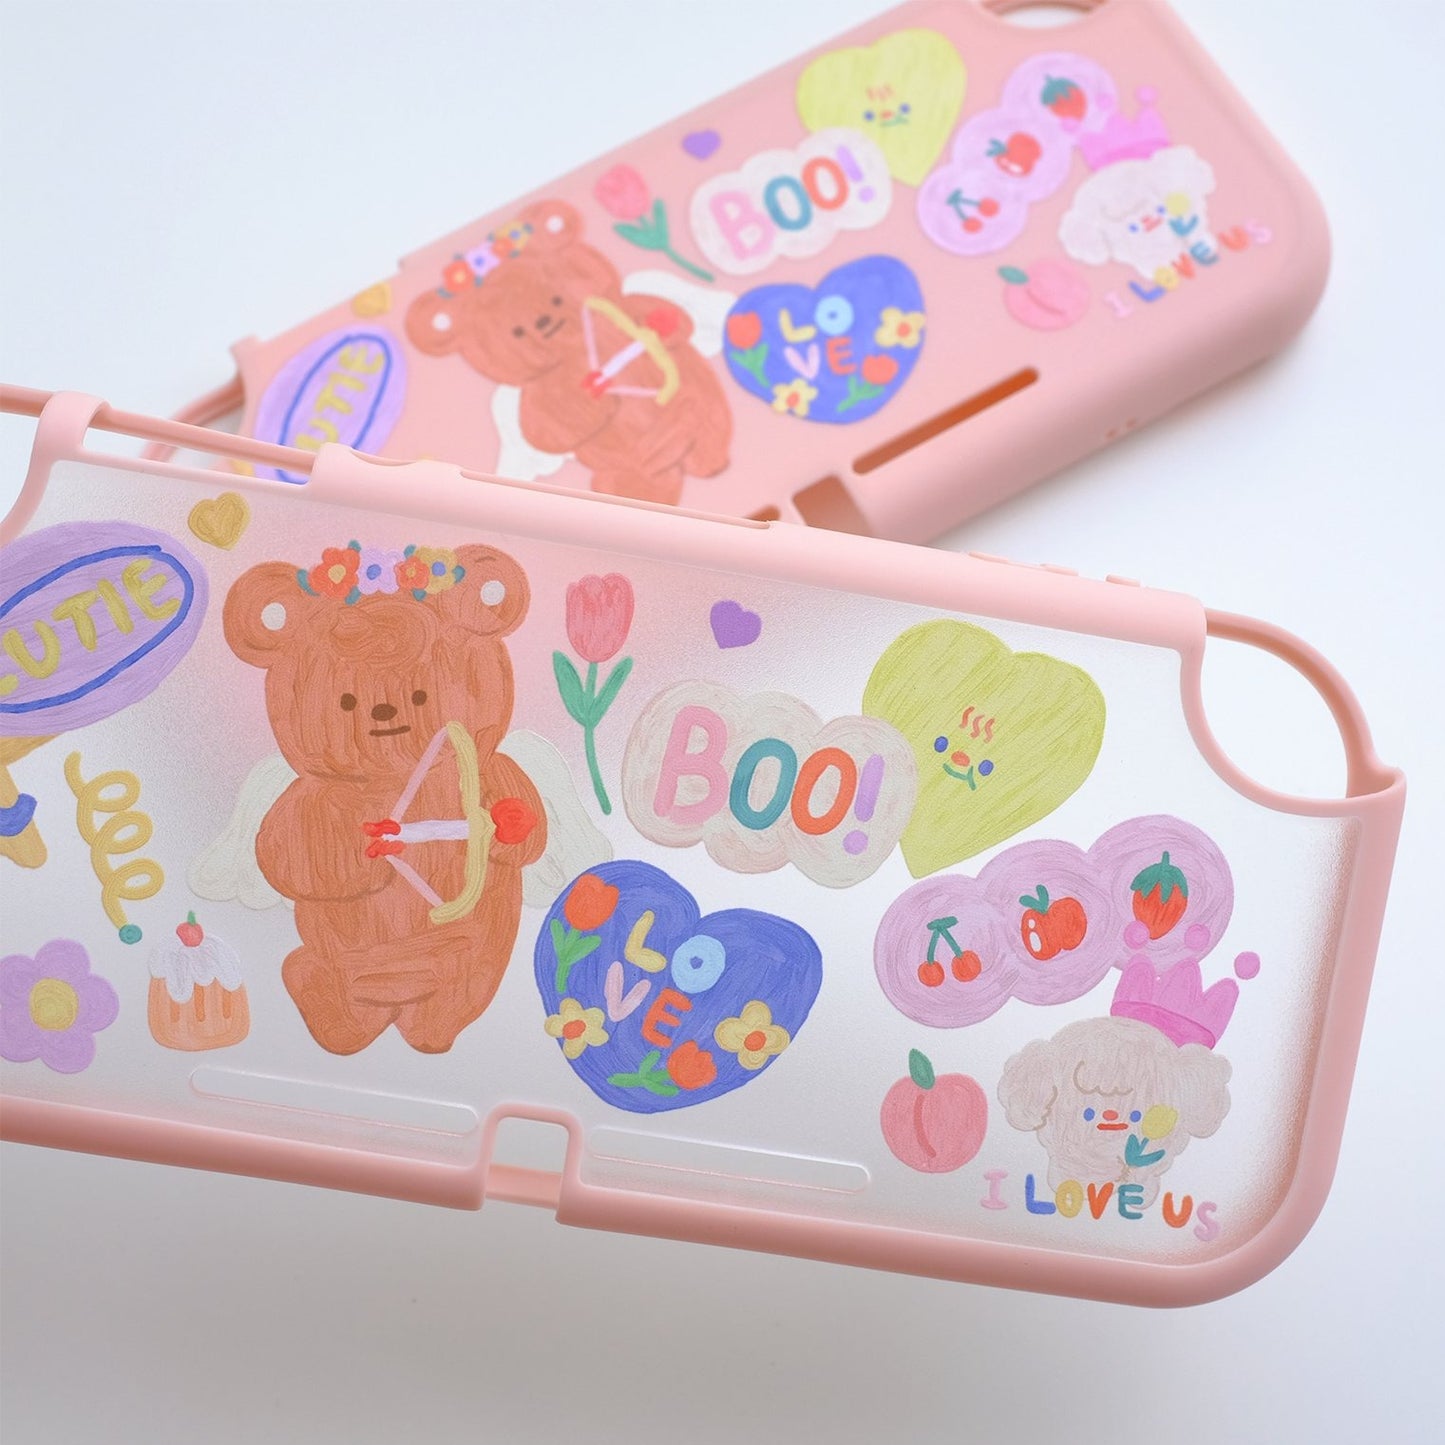 Cutie Bear Transparent Case - Switcheries